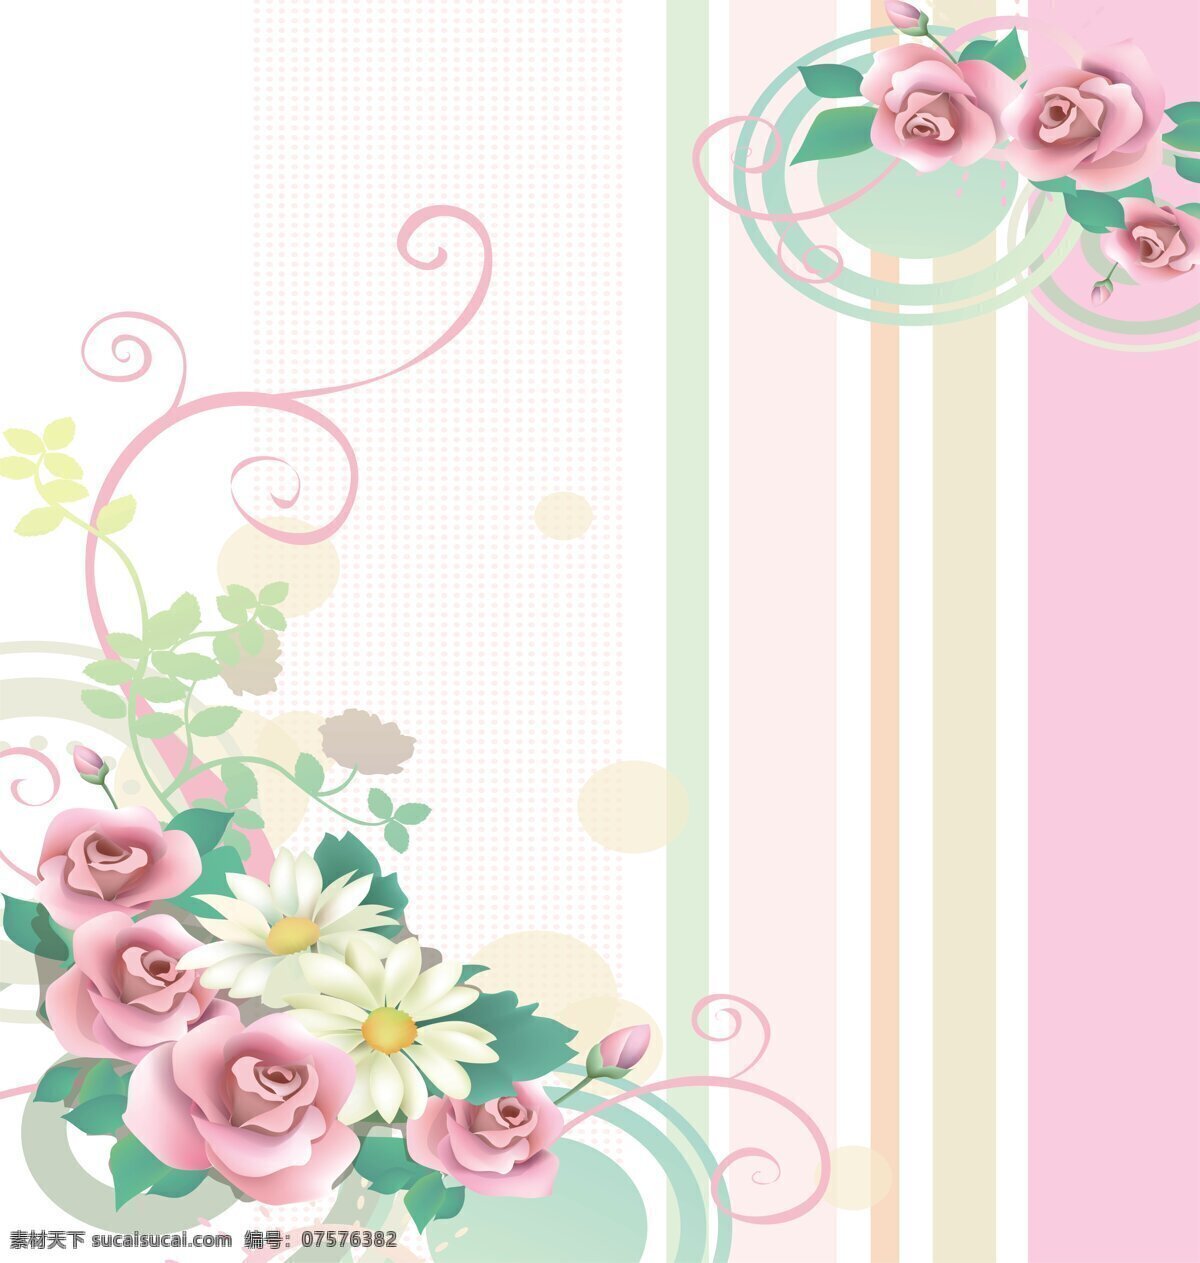 玫瑰爱恋 玻璃移门图案 玫瑰花 线条 花案 底纹边框 花边花纹 设计图库 环境设计 其他设计